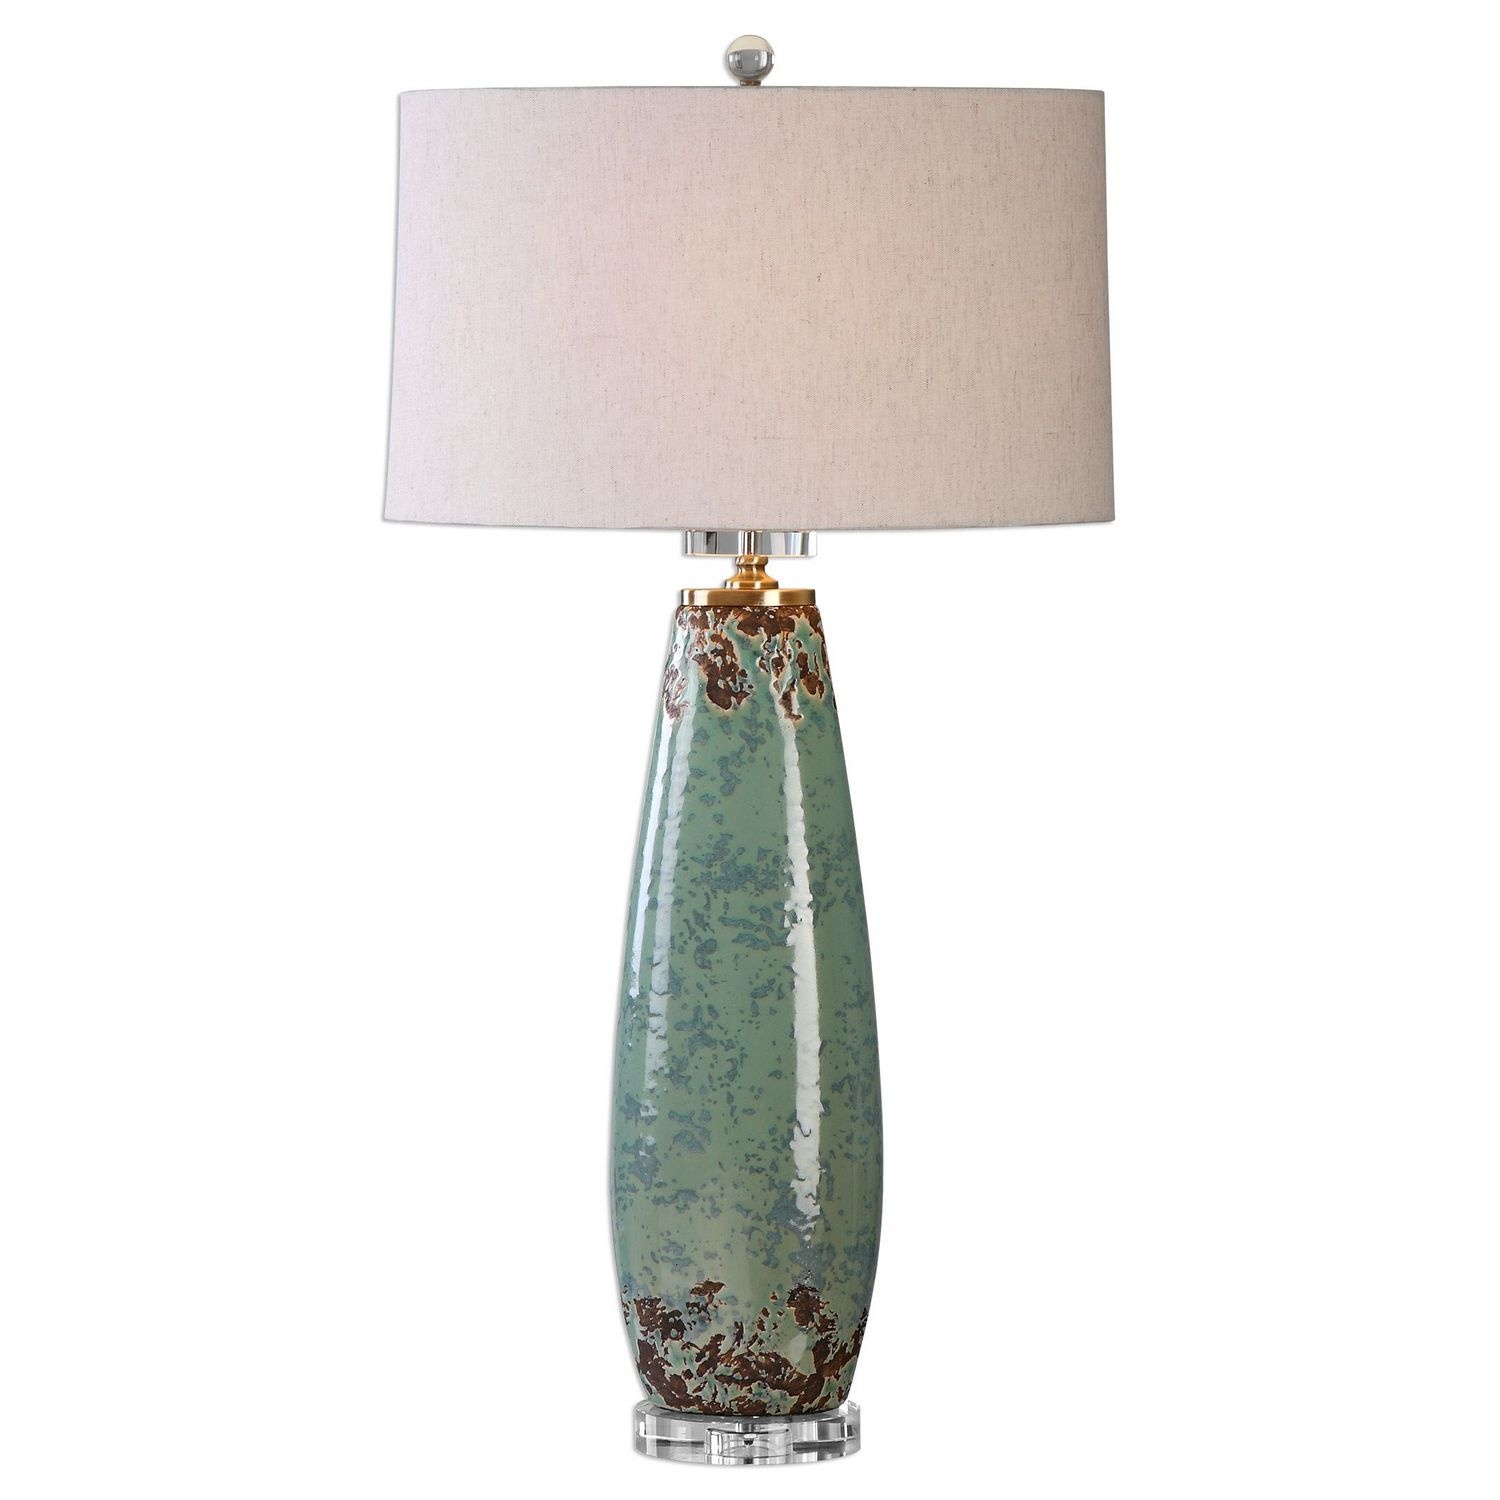 Uttermost Rovasenda Table Lamp - Mint Green